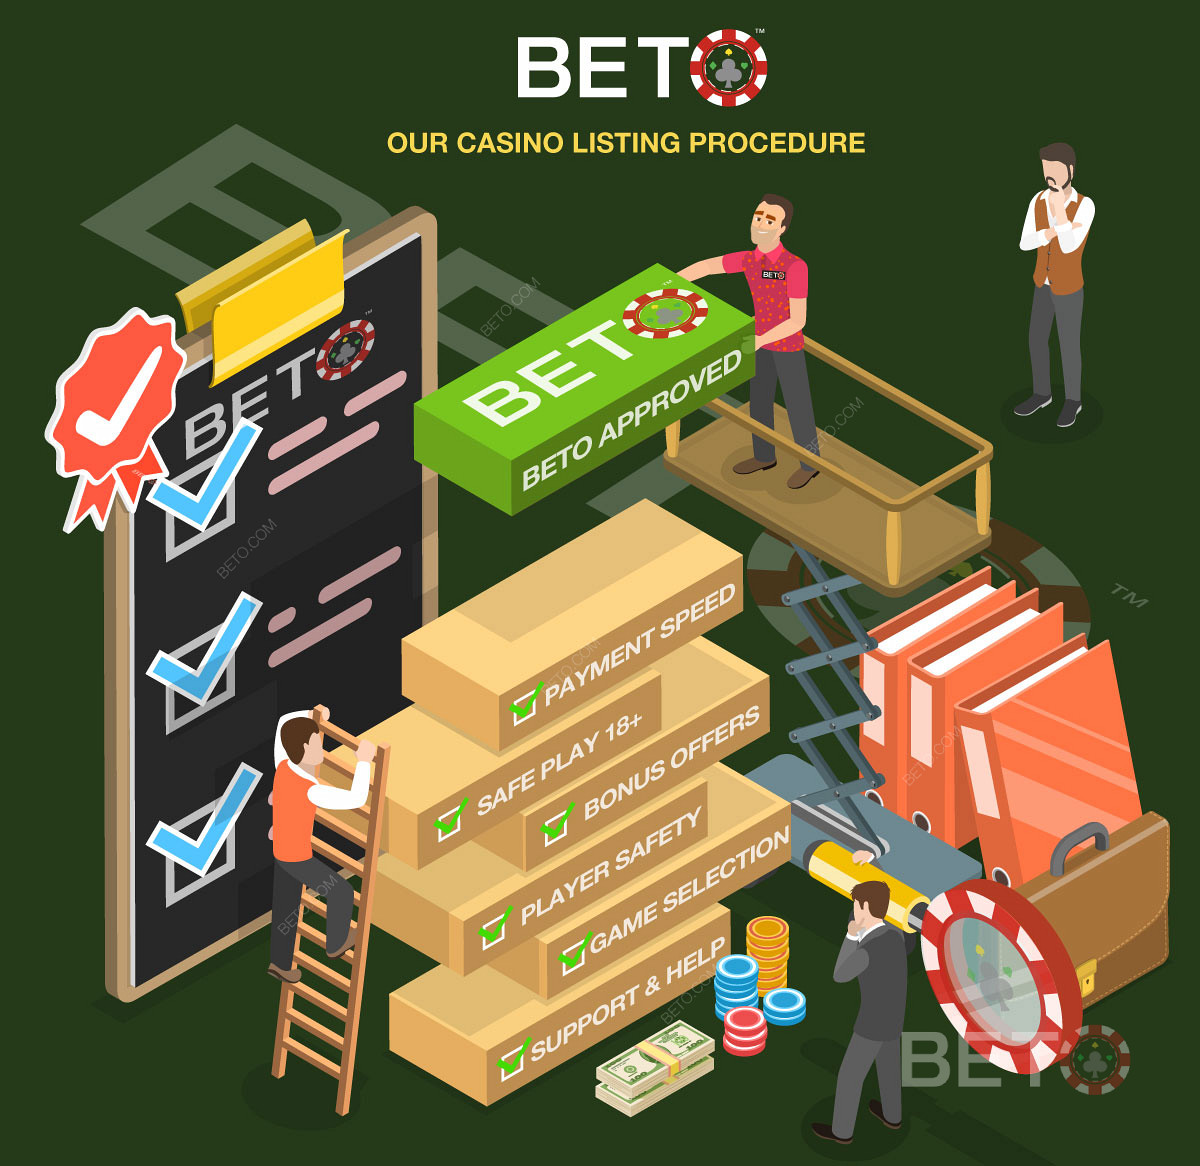 Le processus de revue détaillée des casinos sur BETO.com